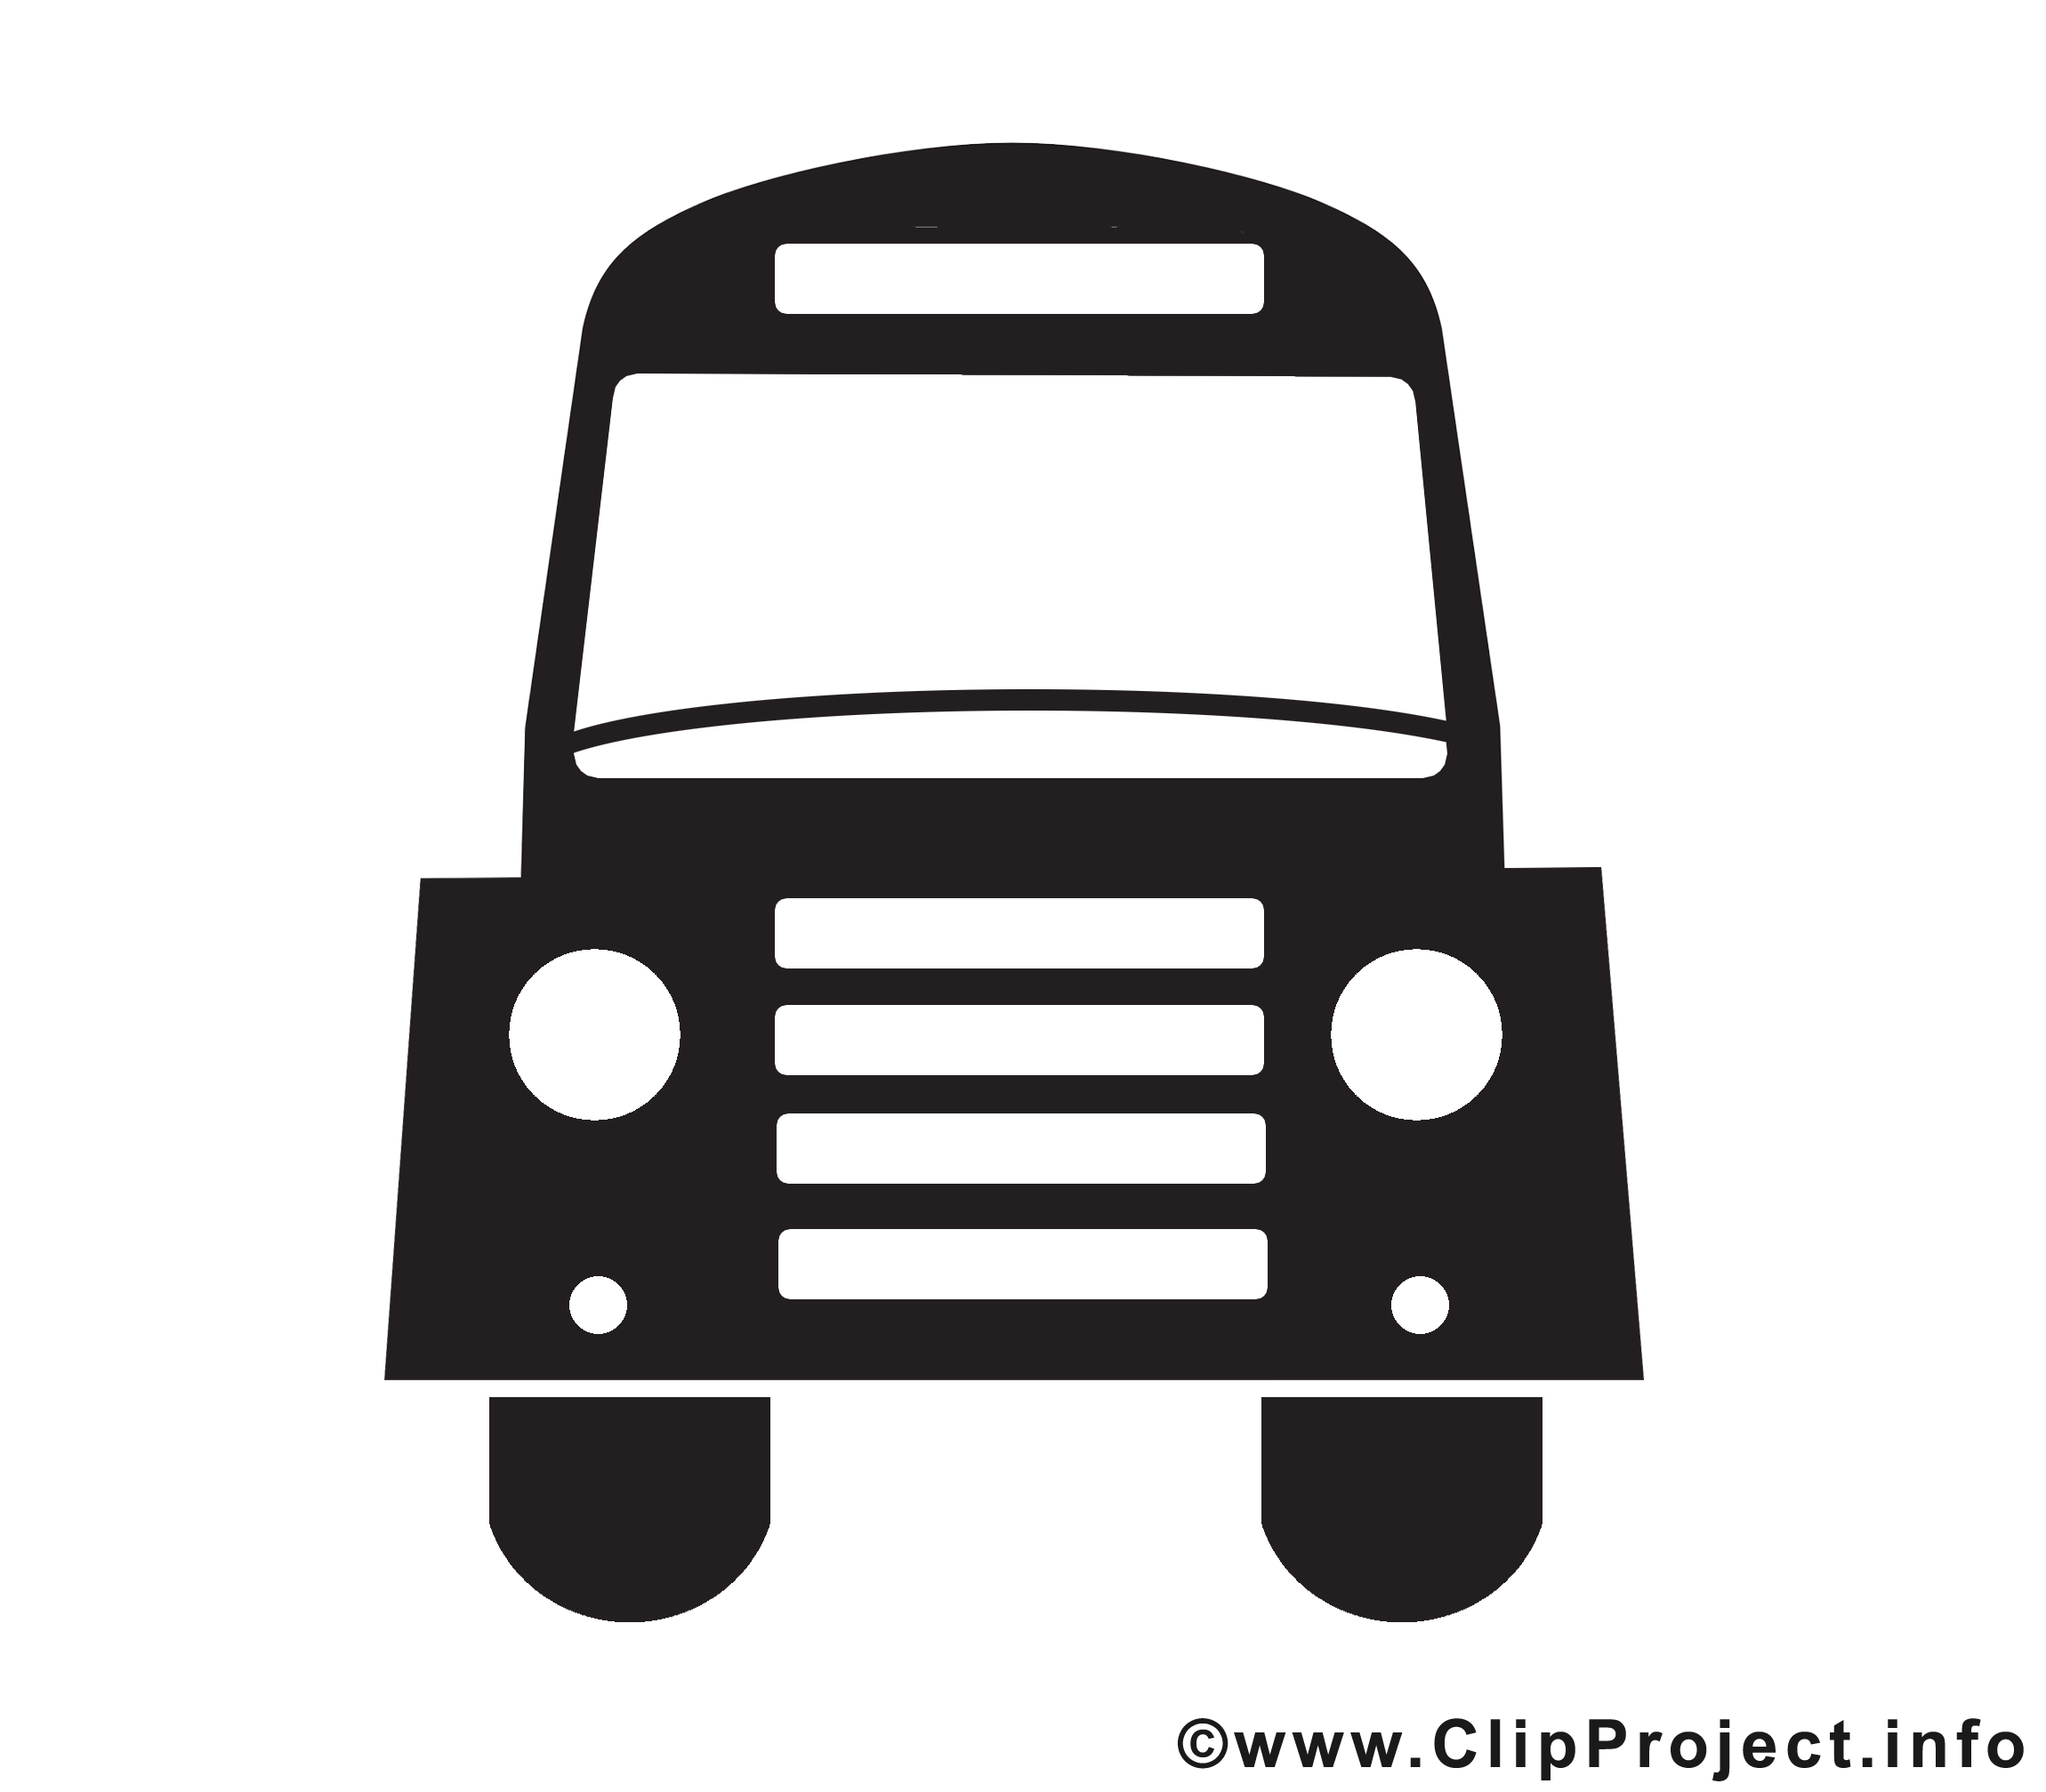 Bus noir et blanc illustration à télécharger gratuite